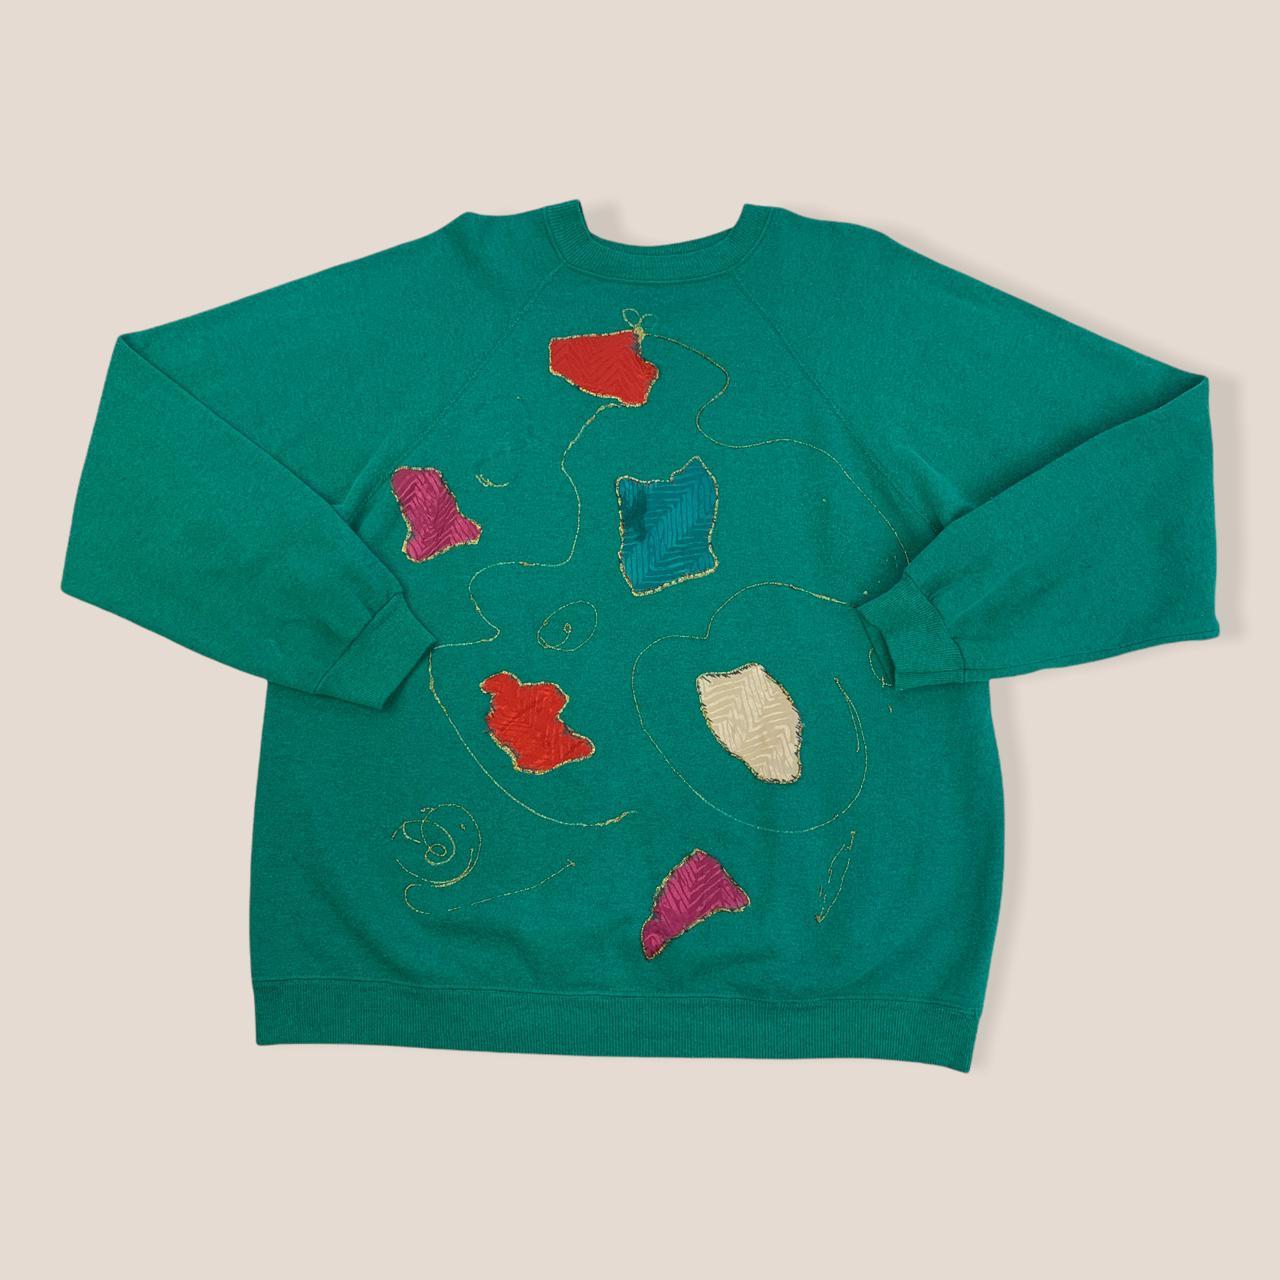 Product Image 2 - Hanes Green Sweatshirt

Hanes American Vintage